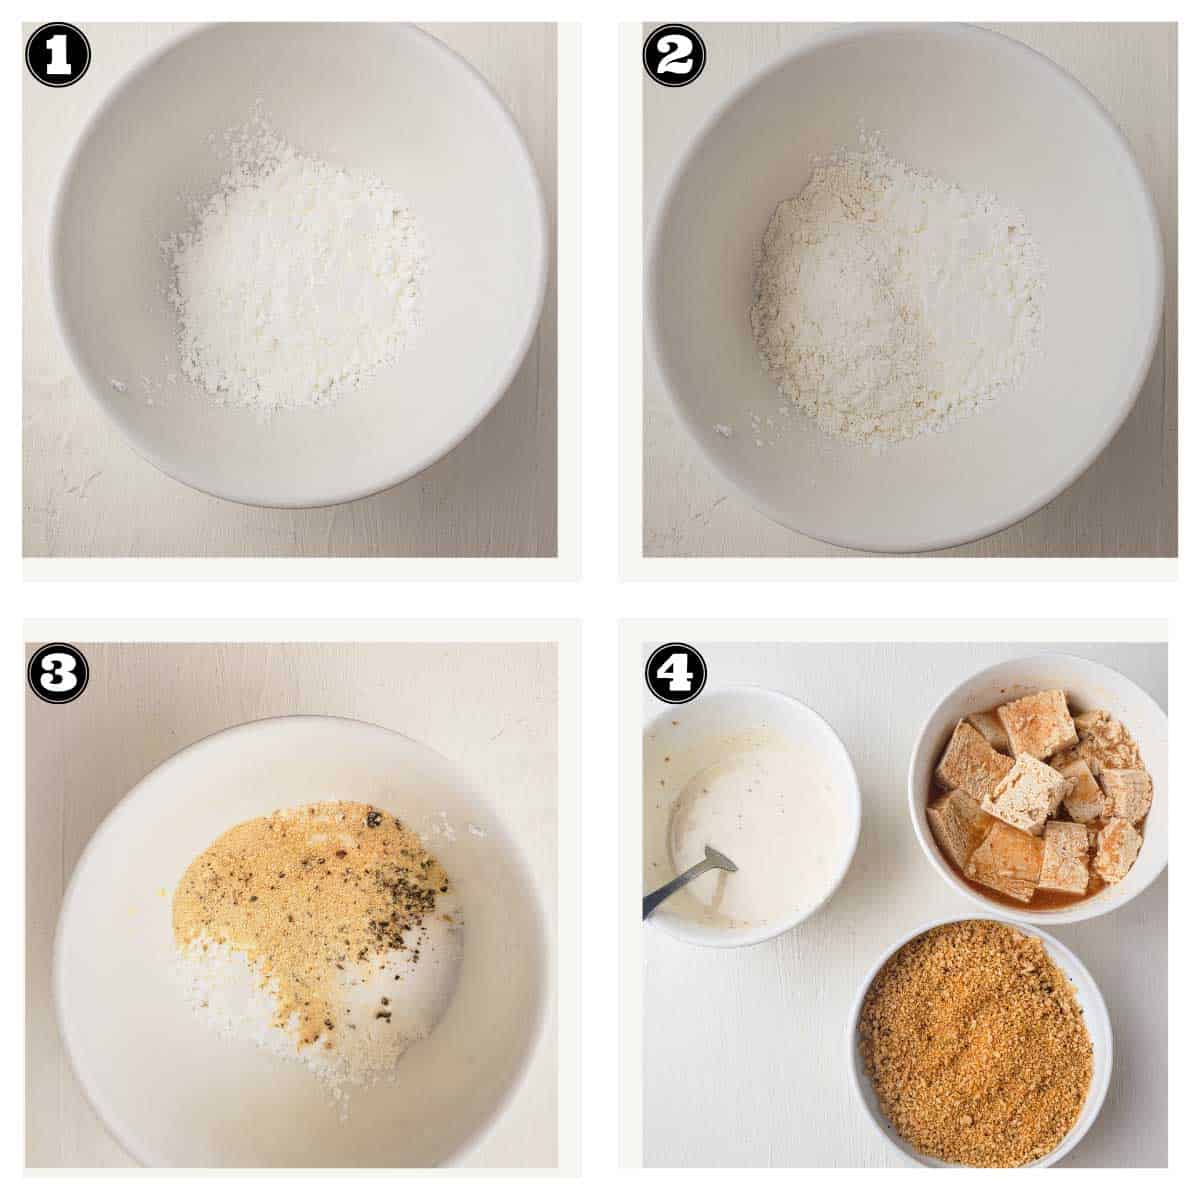 steps for making batter for coating tofu